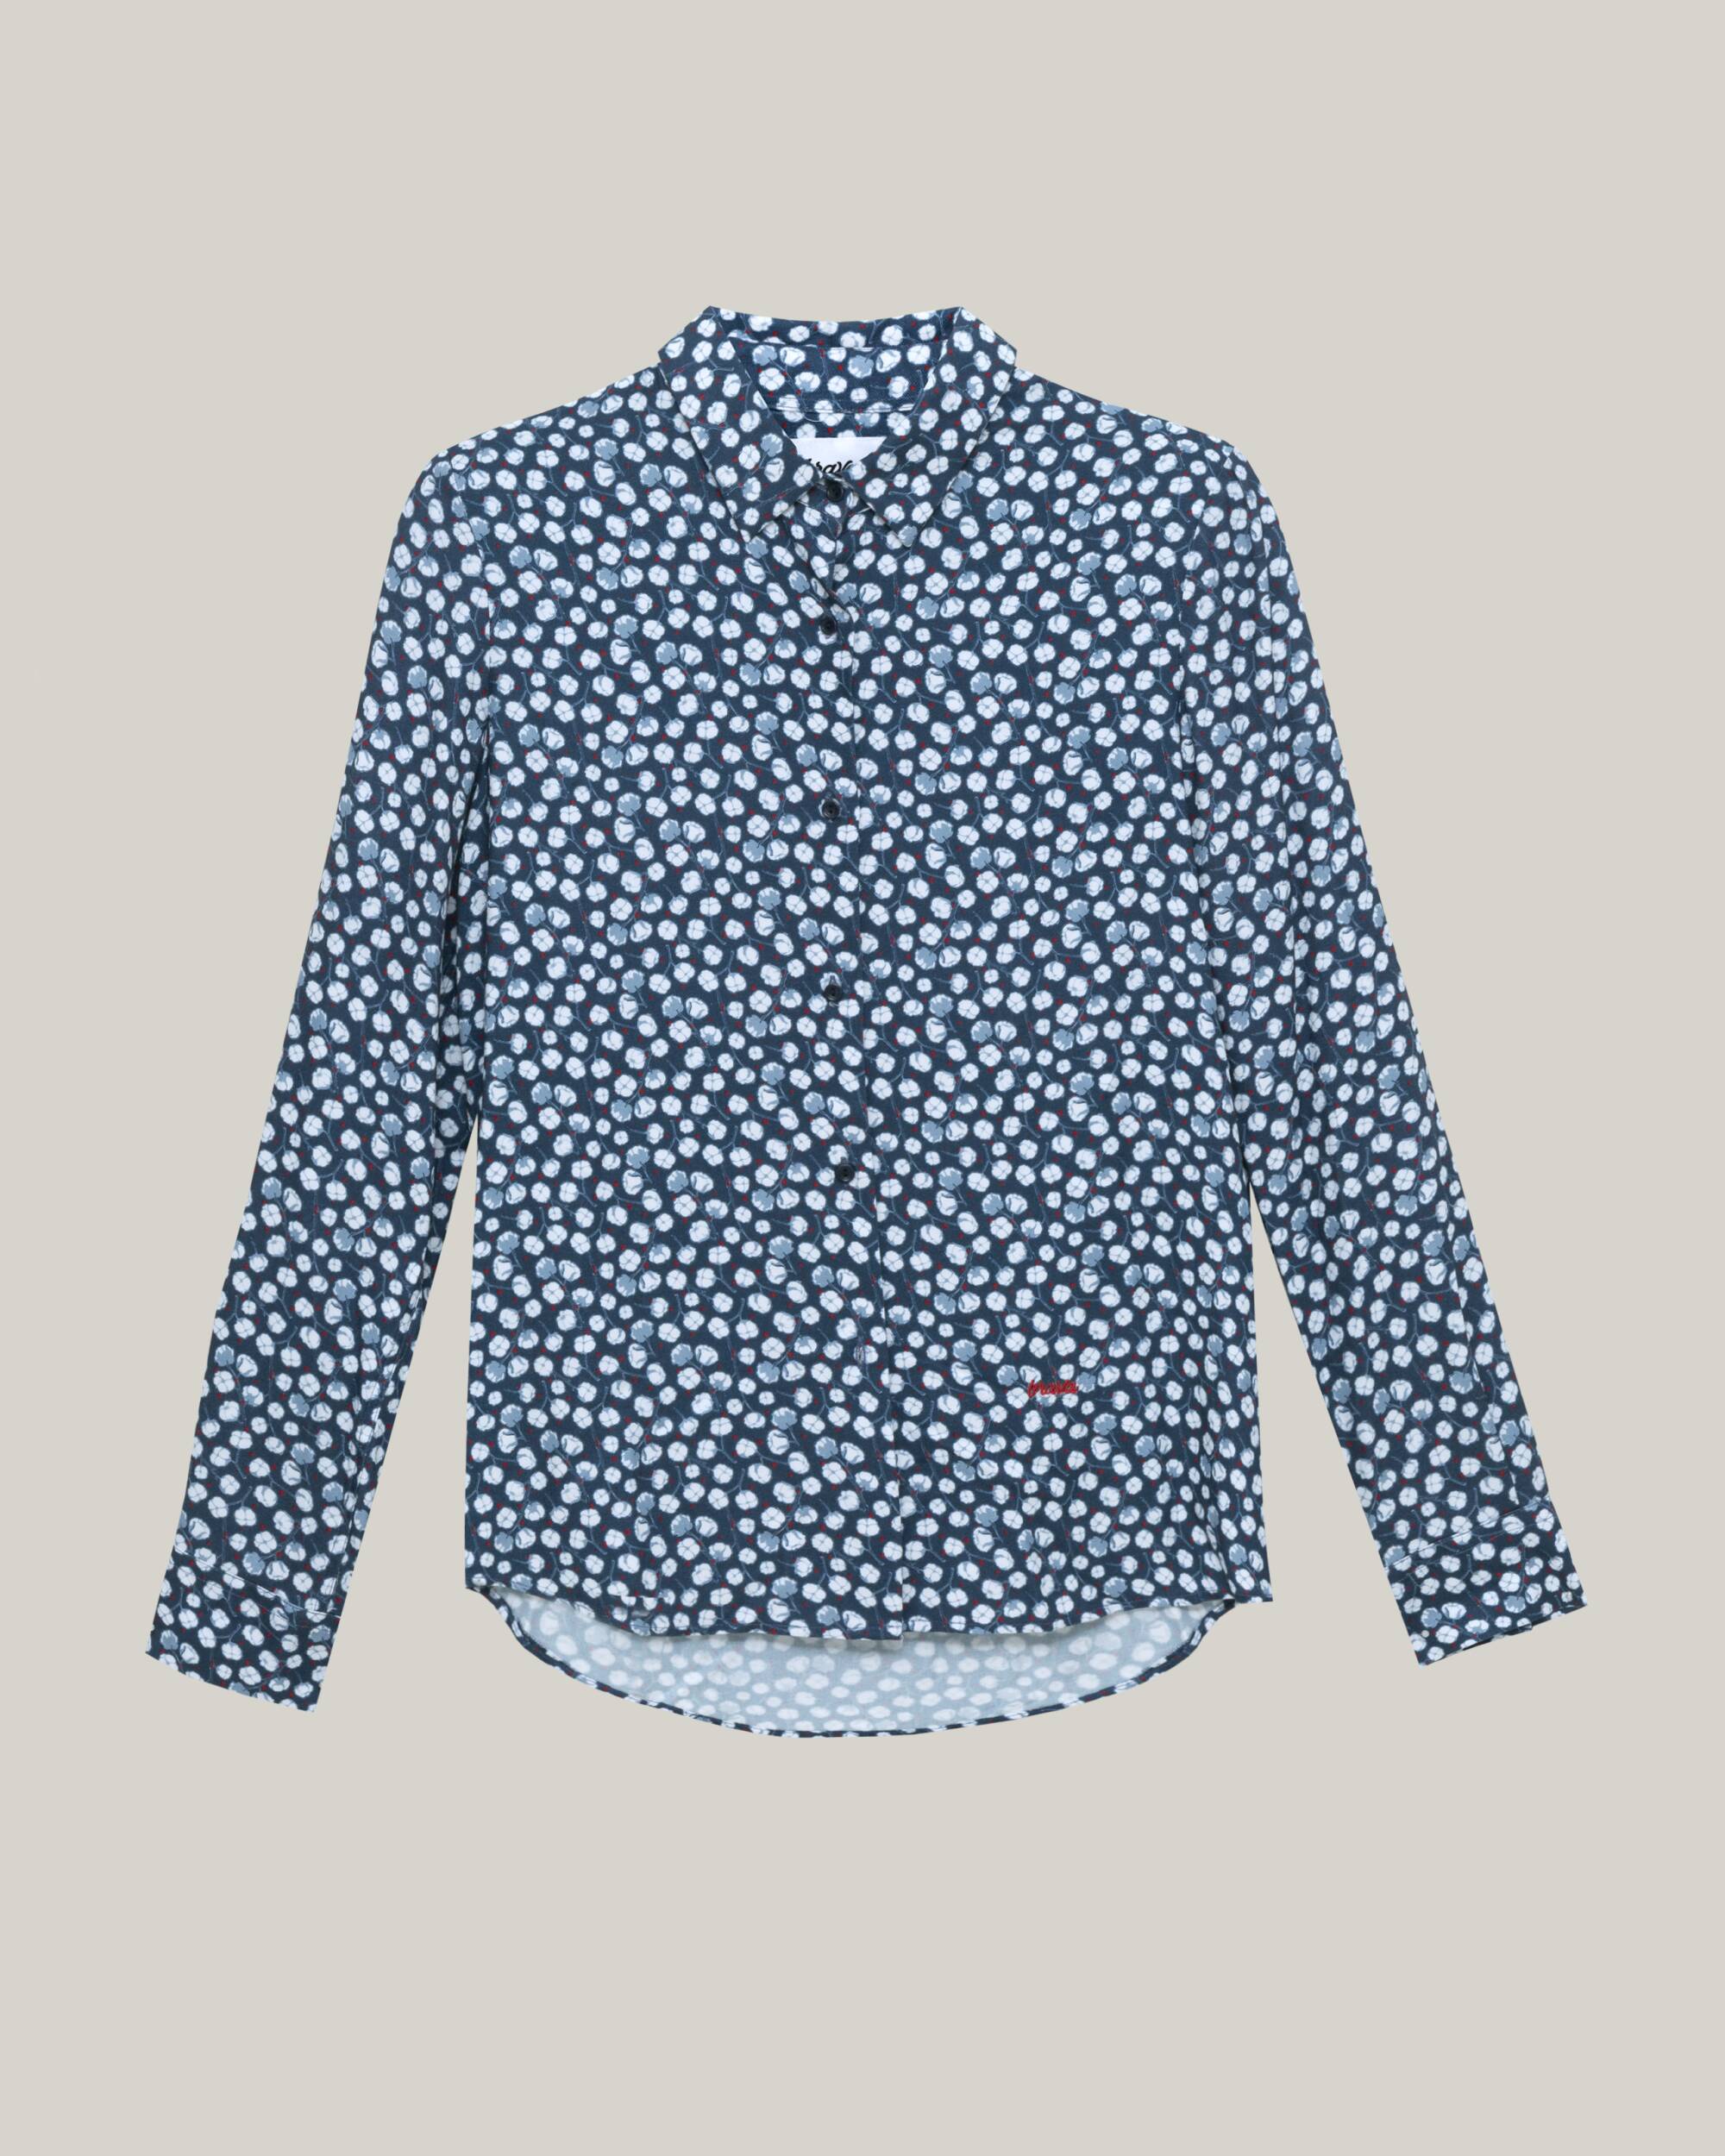 Bluse "Cotton Flower" in blau mit tollem Druck aus 100% ECOVERO von Brava Fabrics